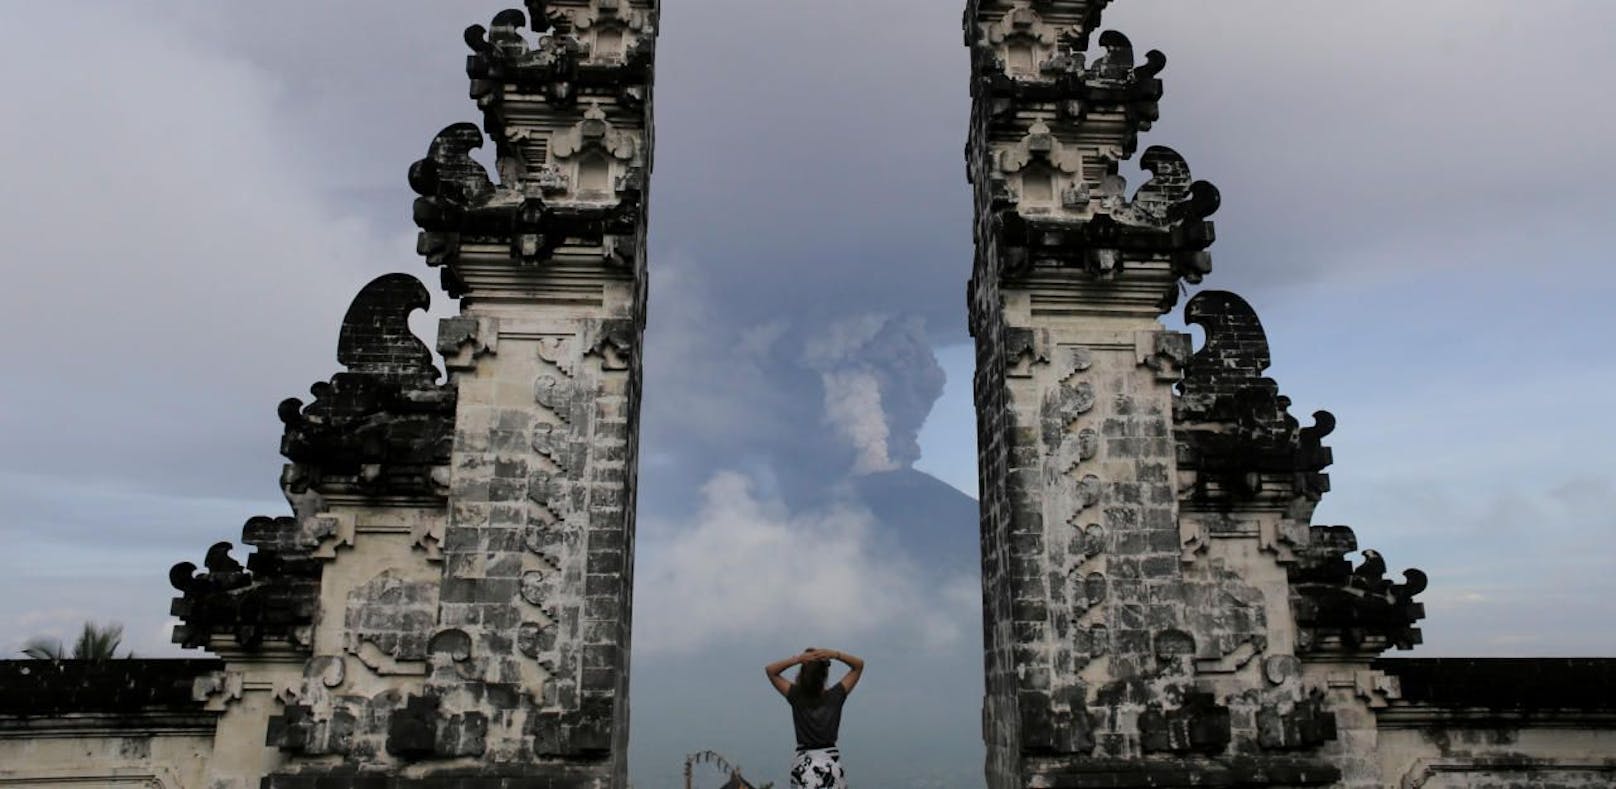 Auf der sehr religiösen Insel Bali gelten strenge Benimmregeln, bei Nicht-Beachtung drohen die Ausweisung oder Gefängnis. (Symbolbild)